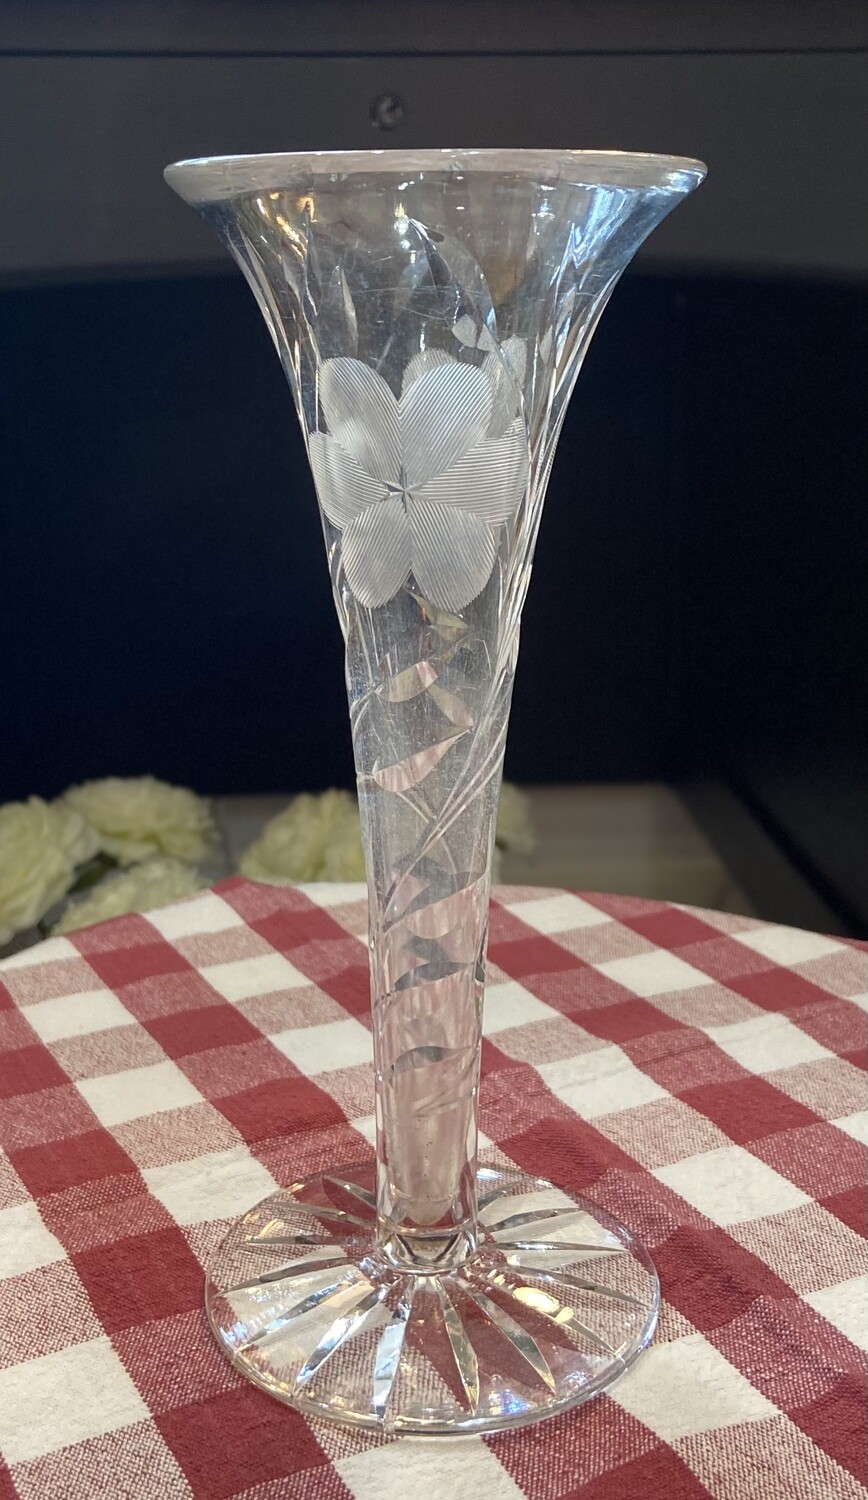 8” Trumpet Flower Vase with Etched Design